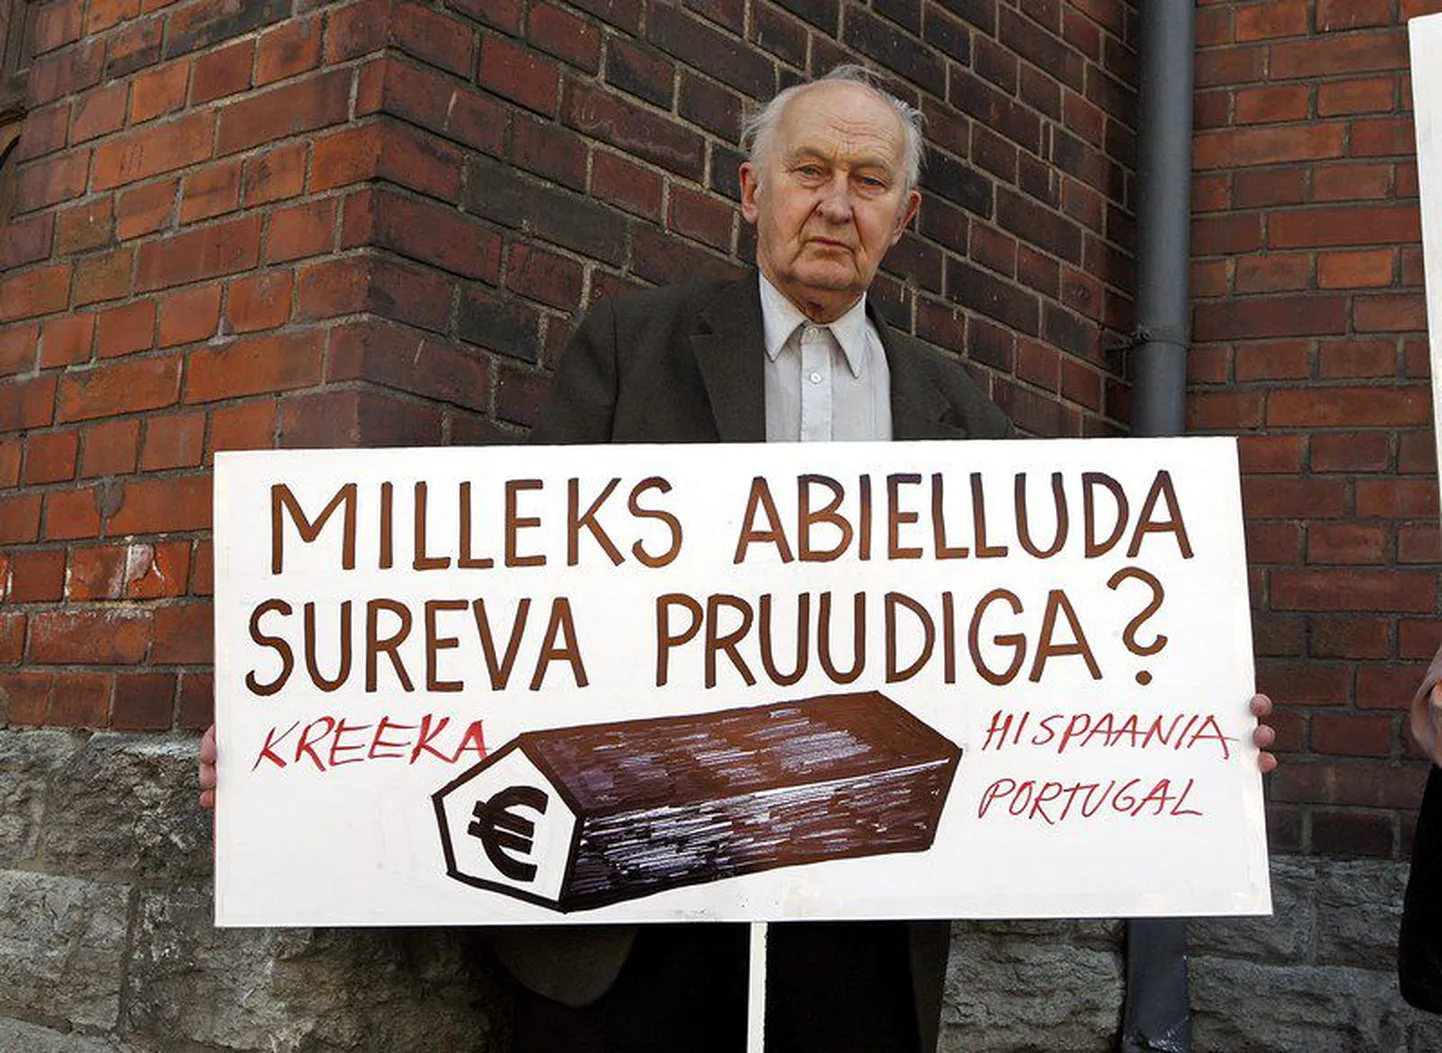 Пикет в защиту эстонской кроны.Надпись на плакате: "Для чего жениться на умирающей невесте?"